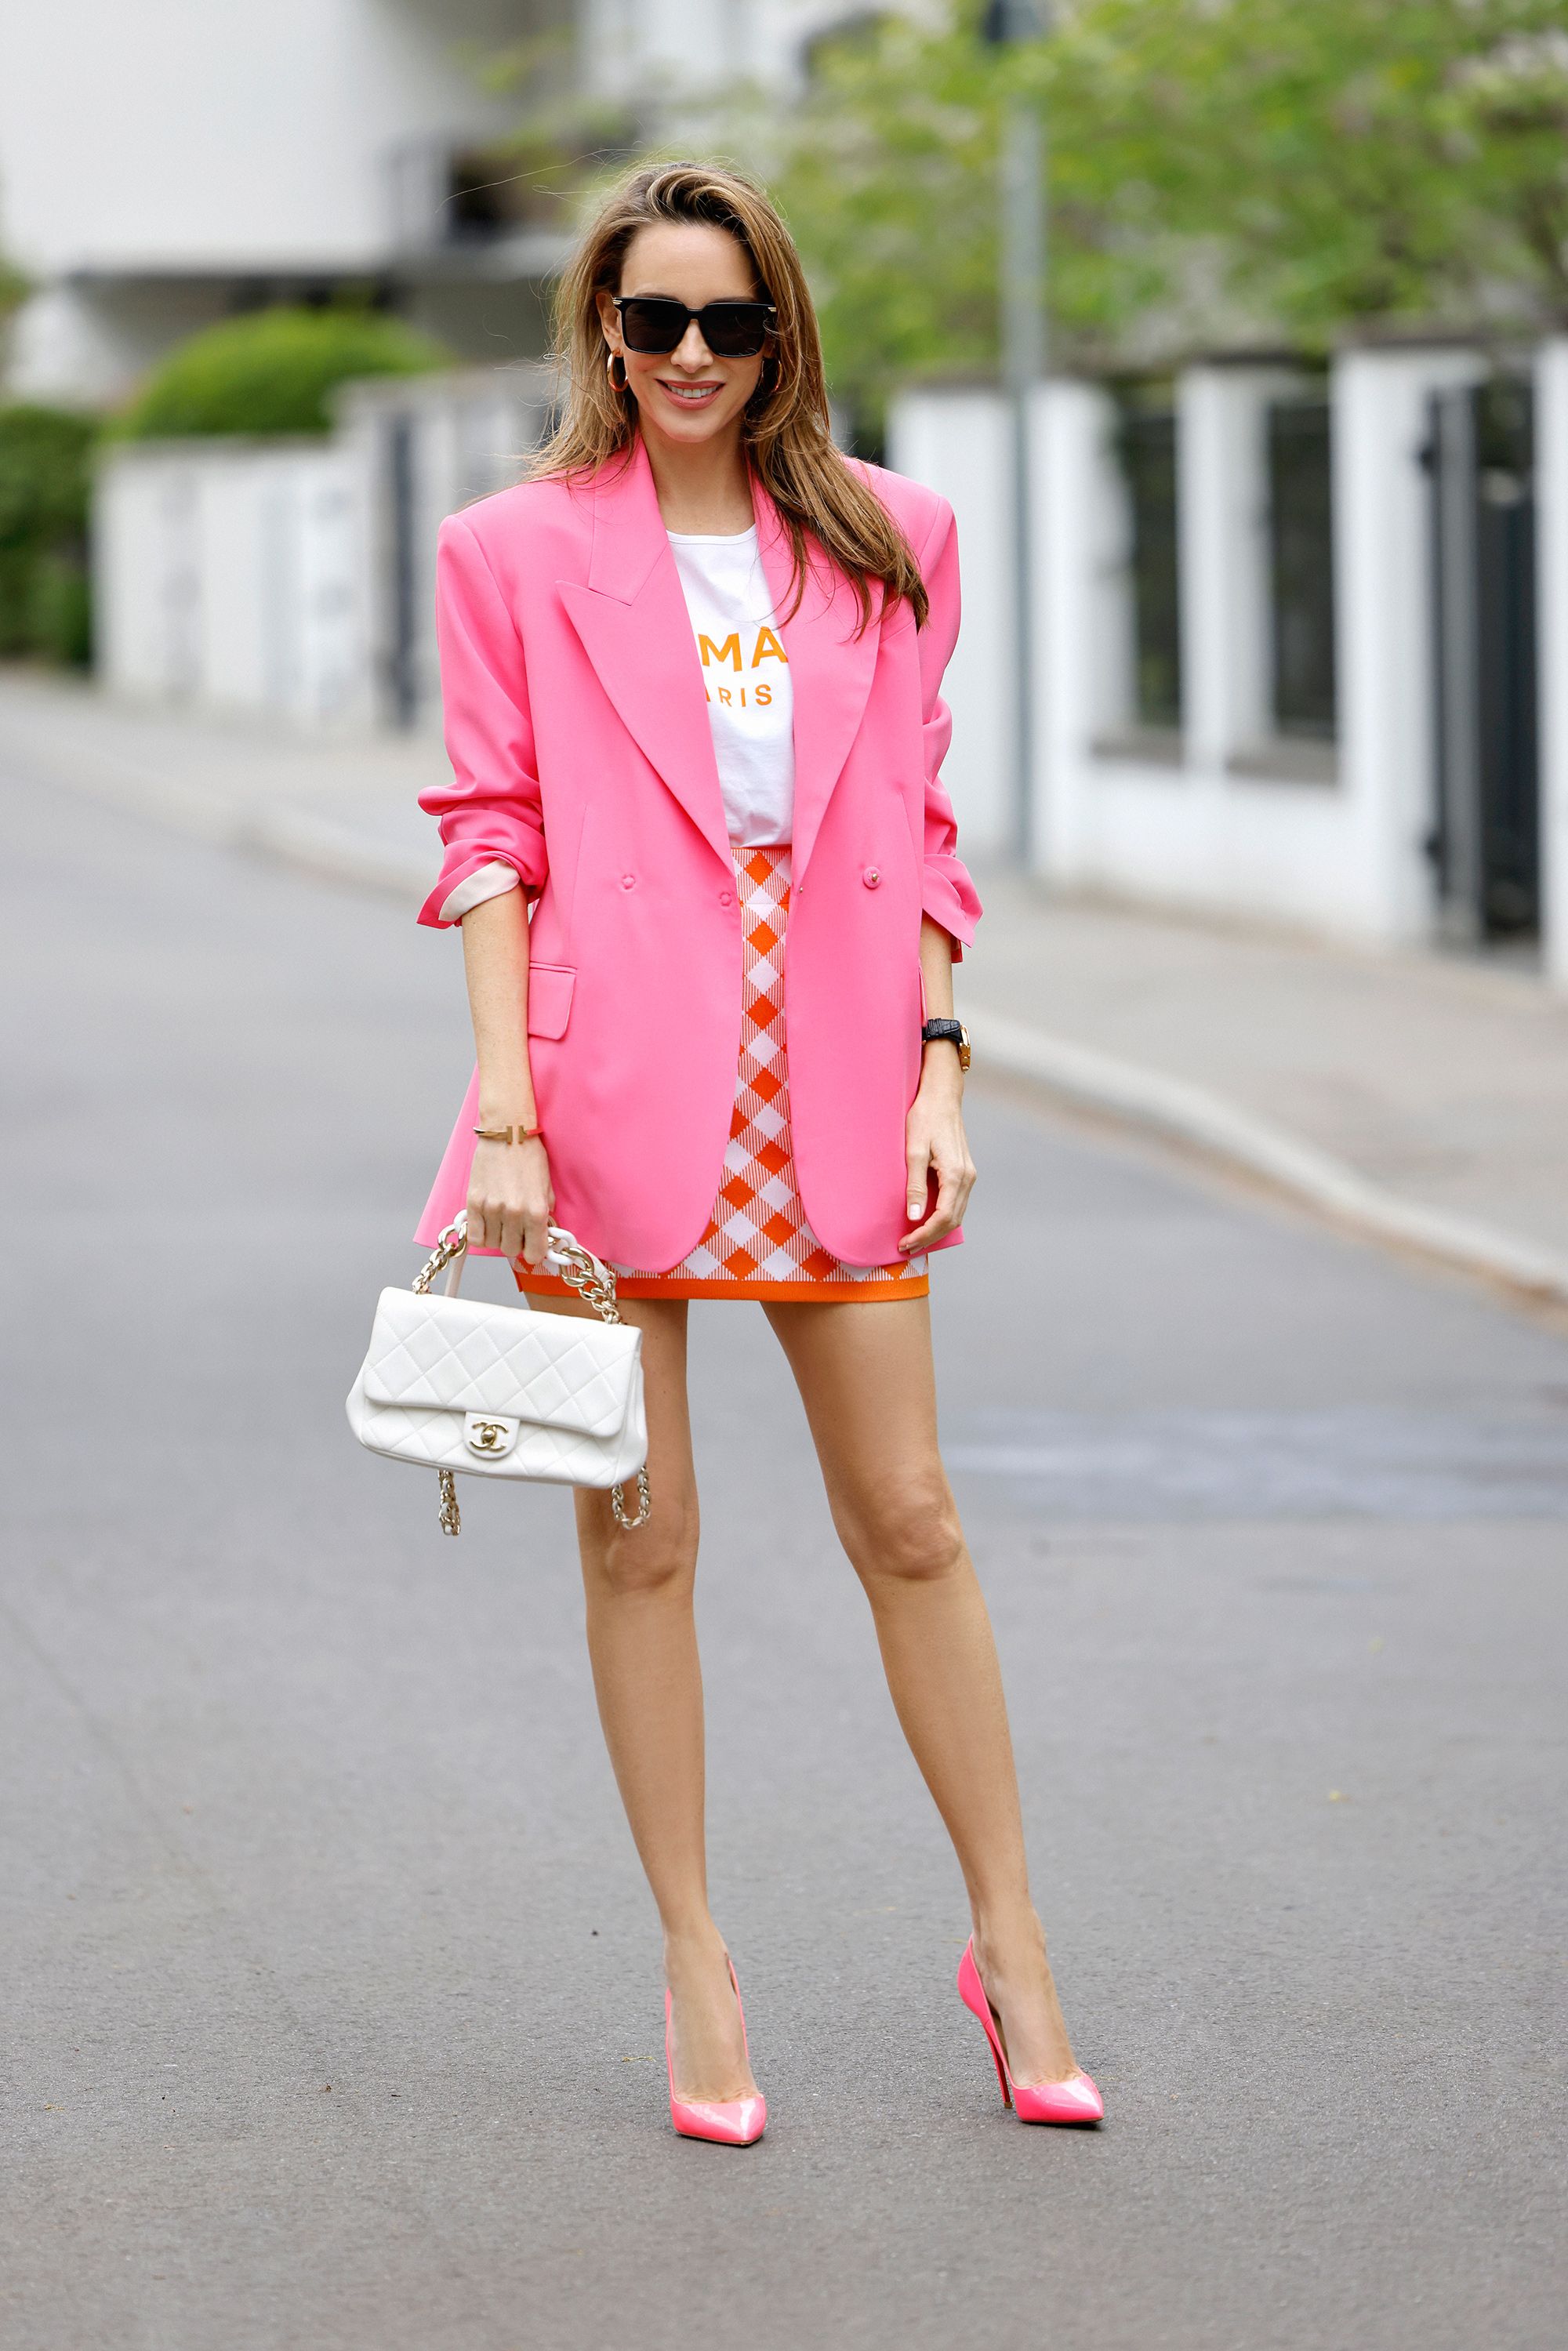 Cómo combinar el color rosa vestir con estilo